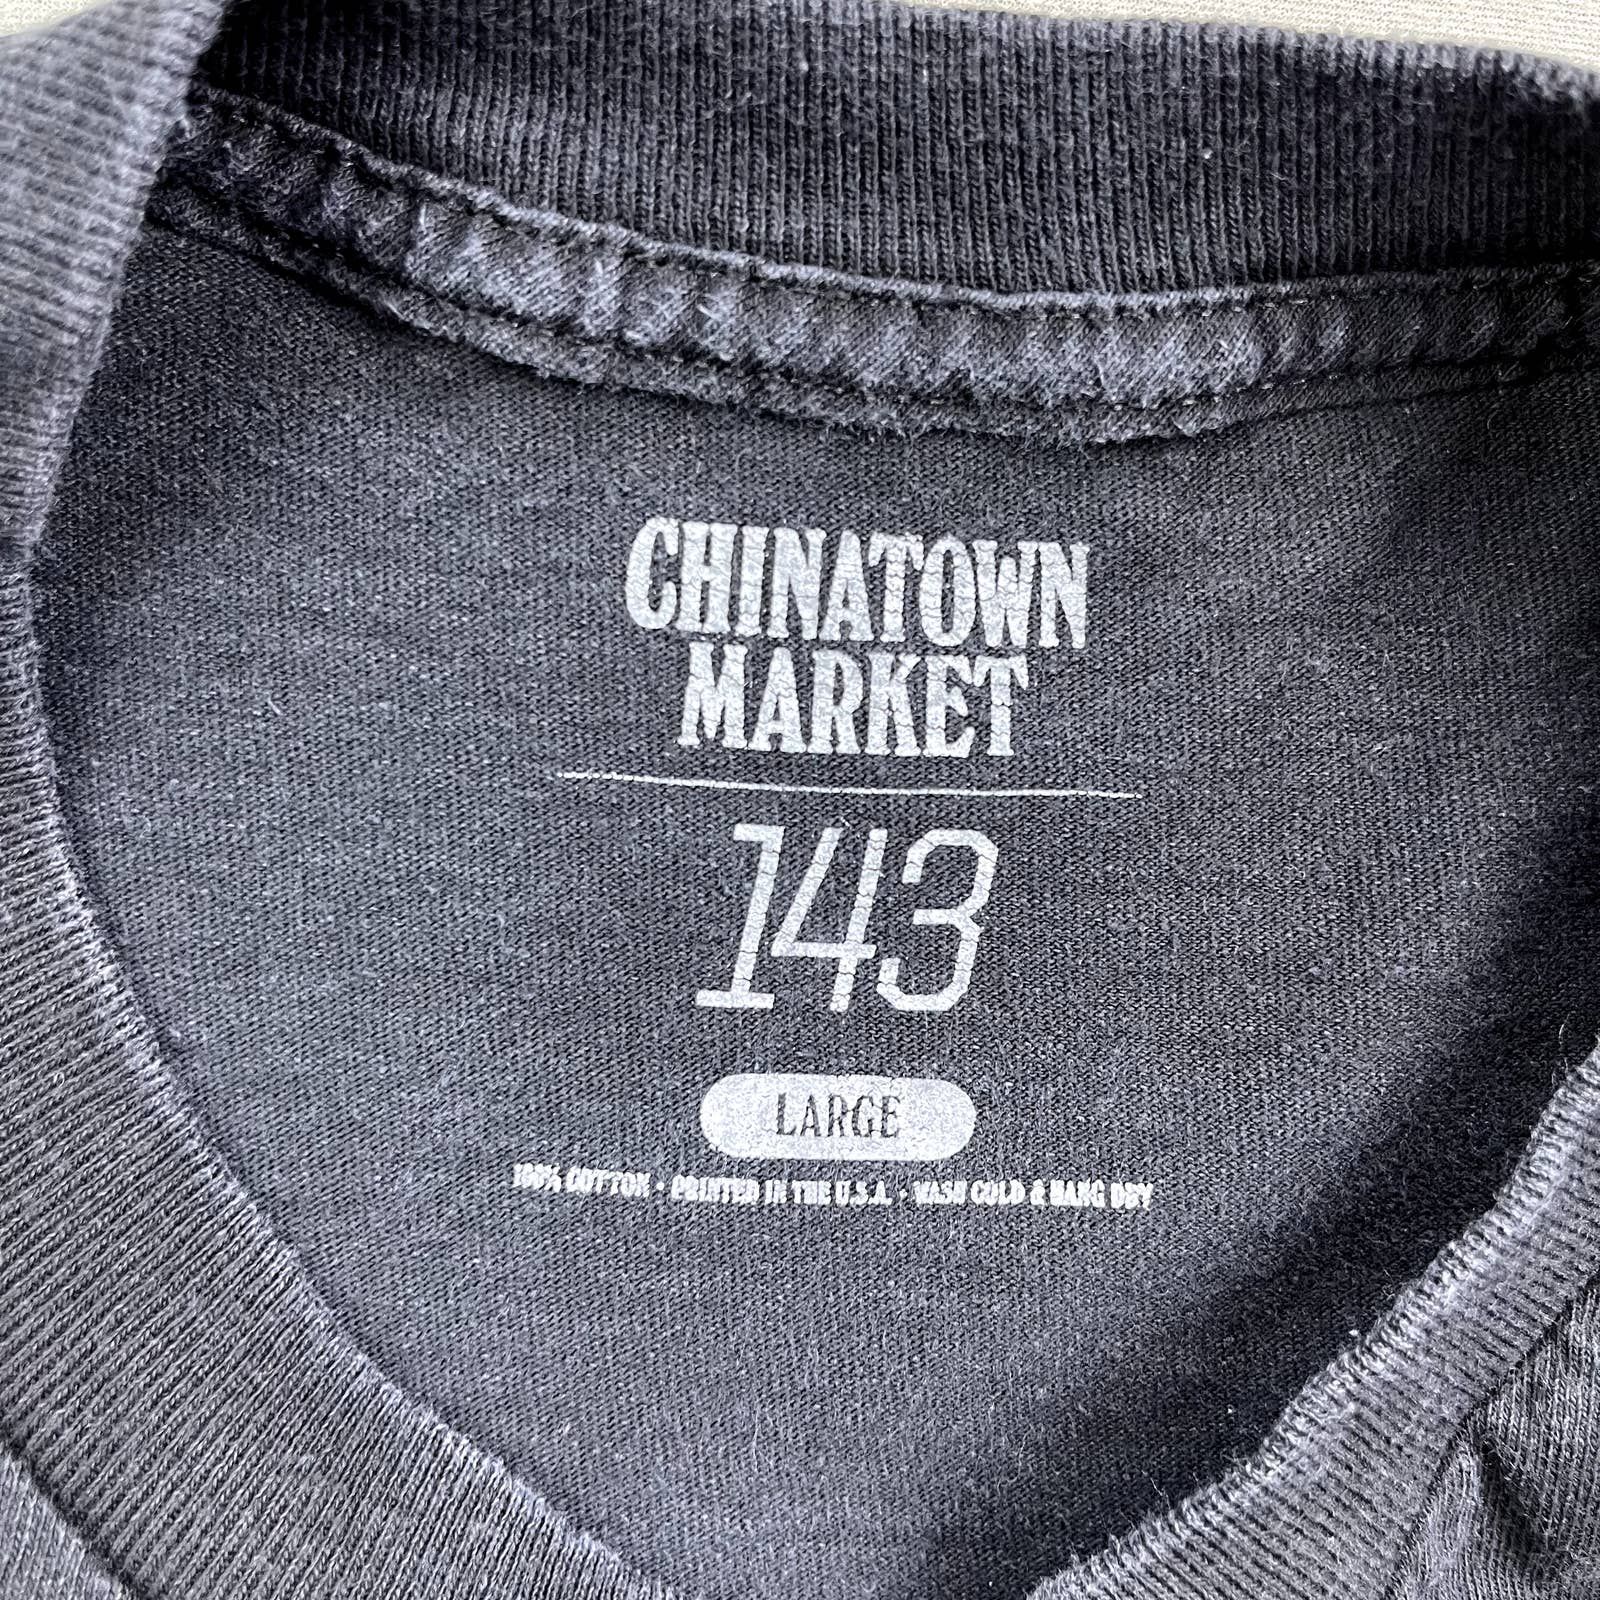 Market Chinatown Market T-Shirt Large Black 143 Artists Hip Hop Size US L / EU 52-54 / 3 - 3 Thumbnail